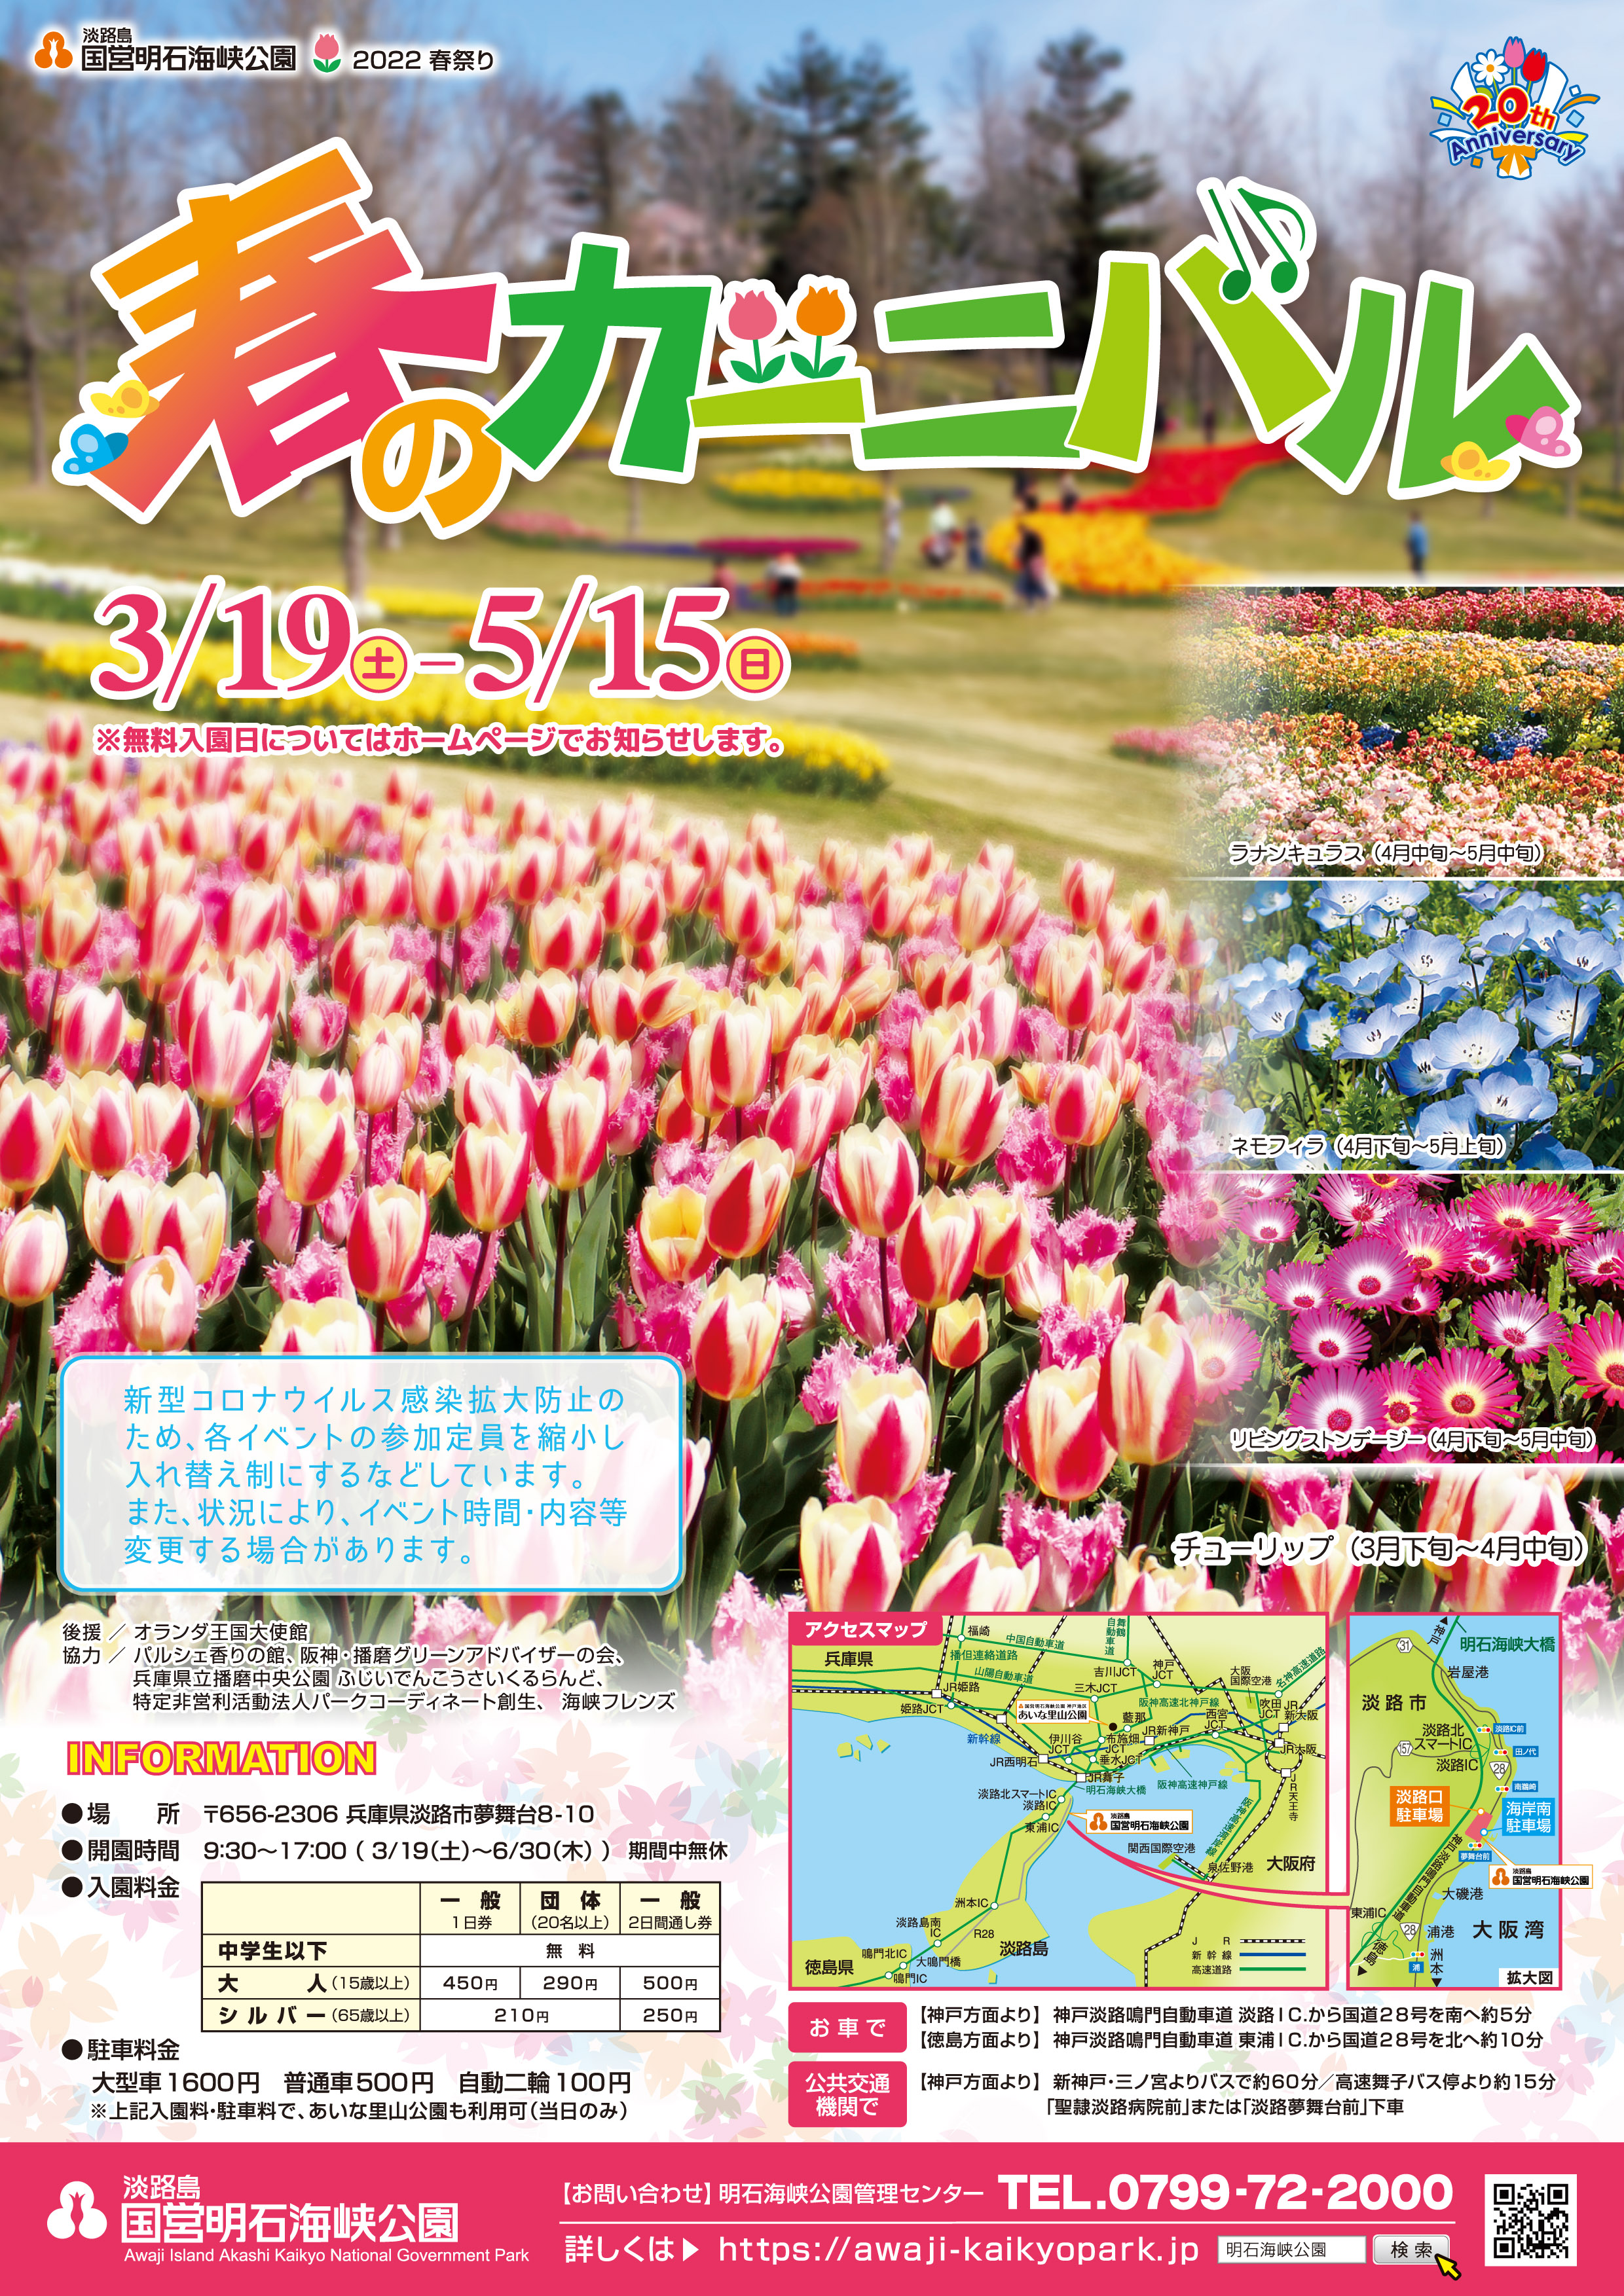 春のカーニバル 3 19 5 15 淡路島 国営明石海峡公園